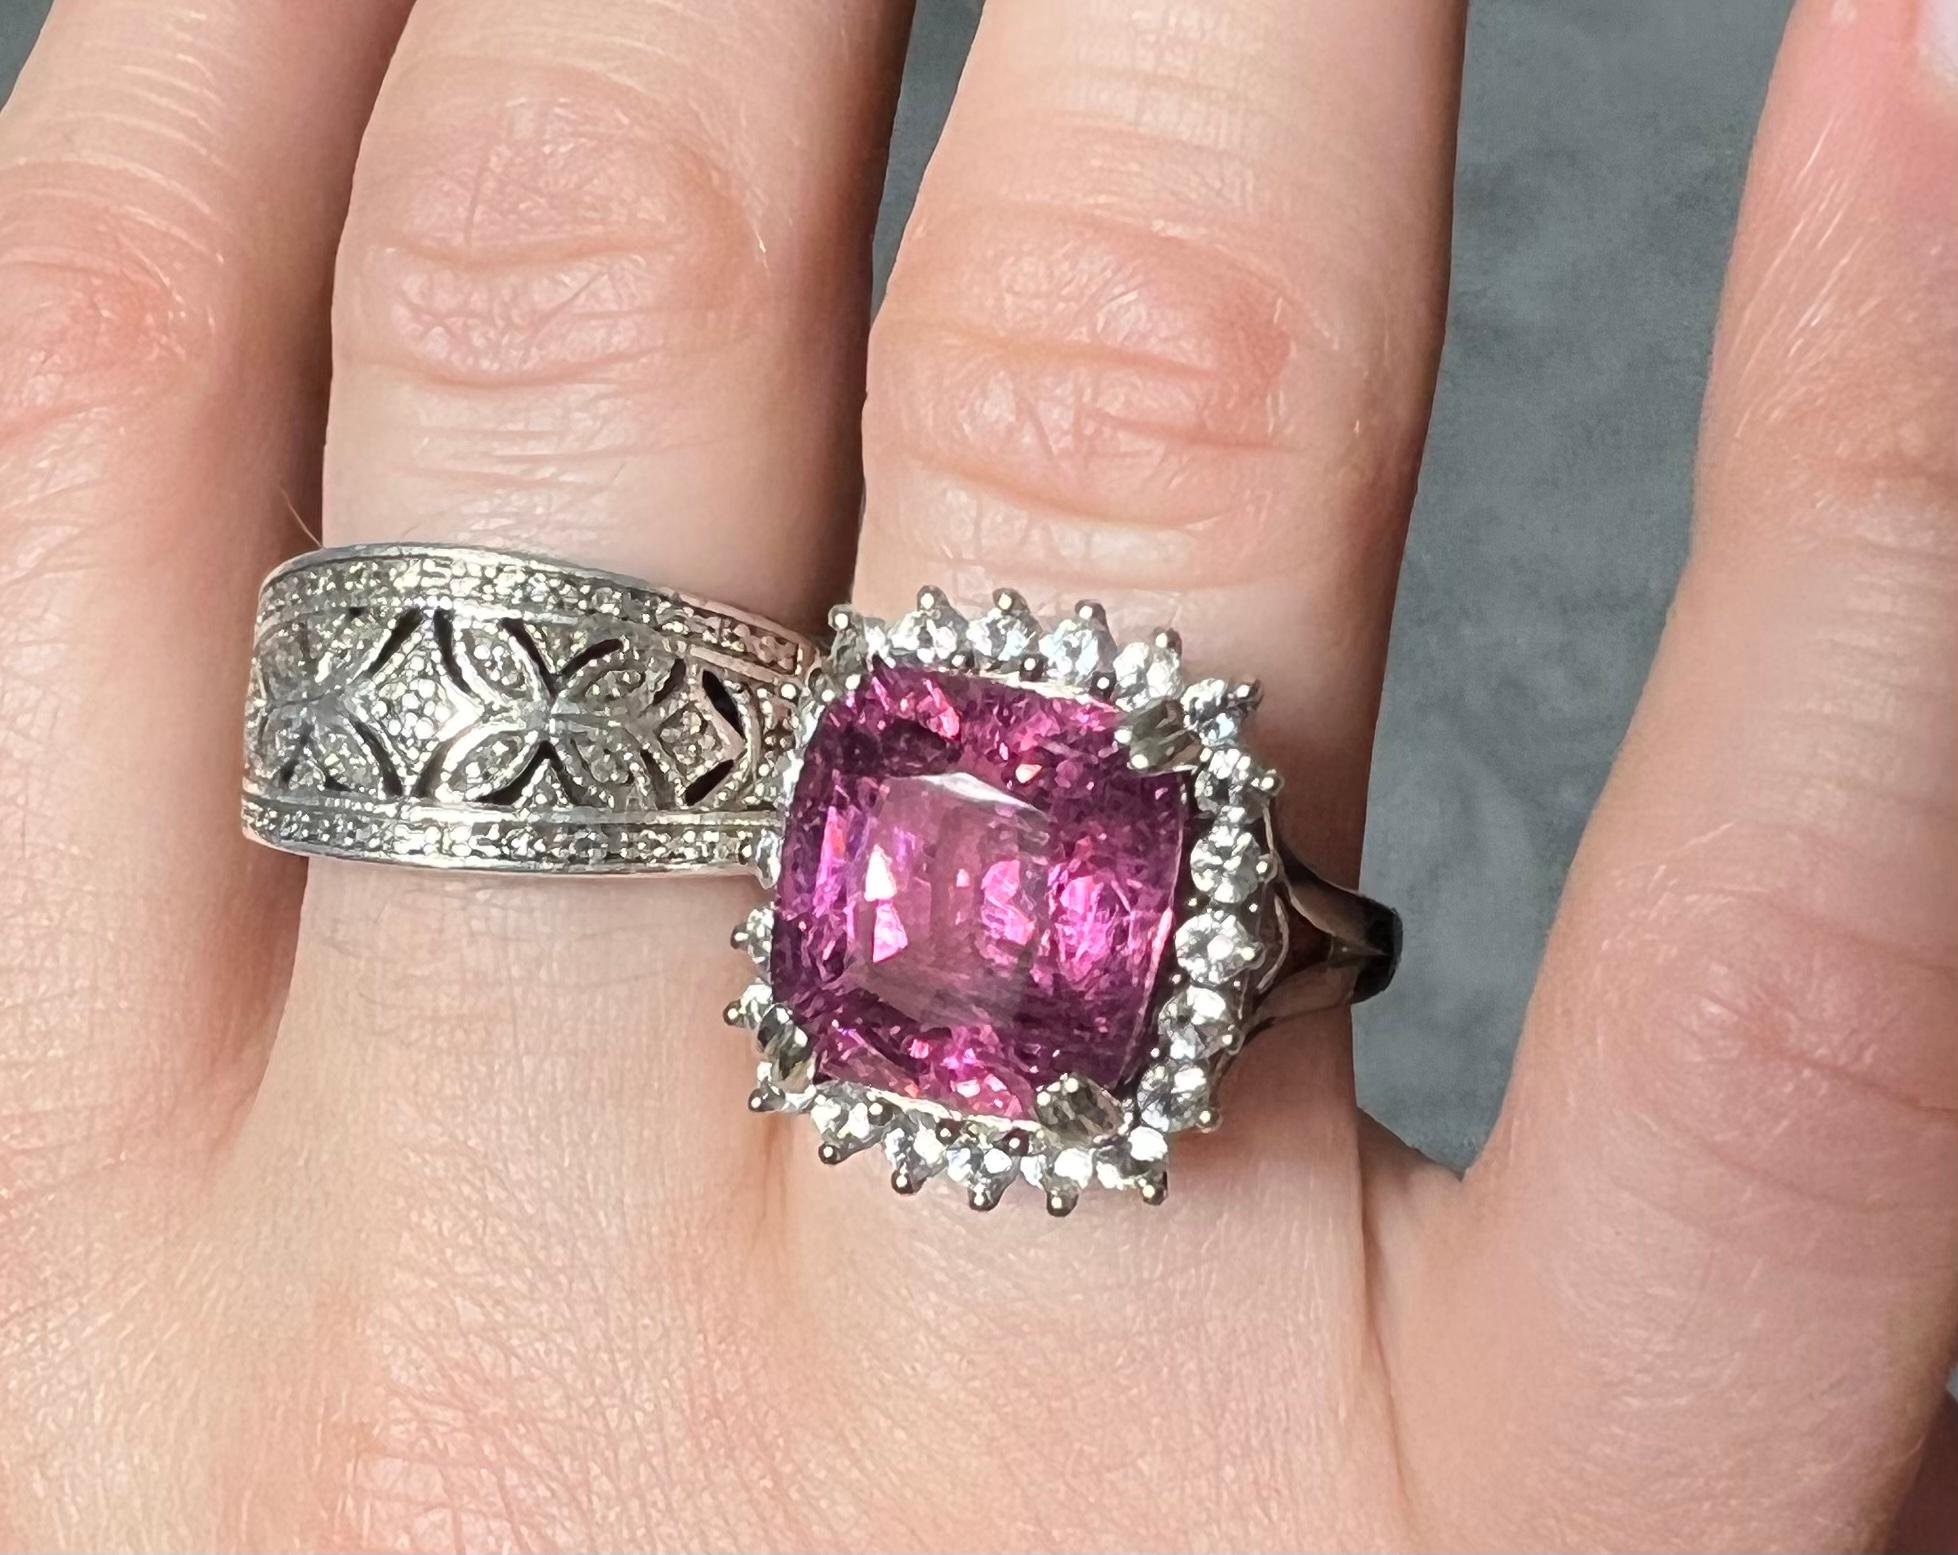 purplish pink gemstones